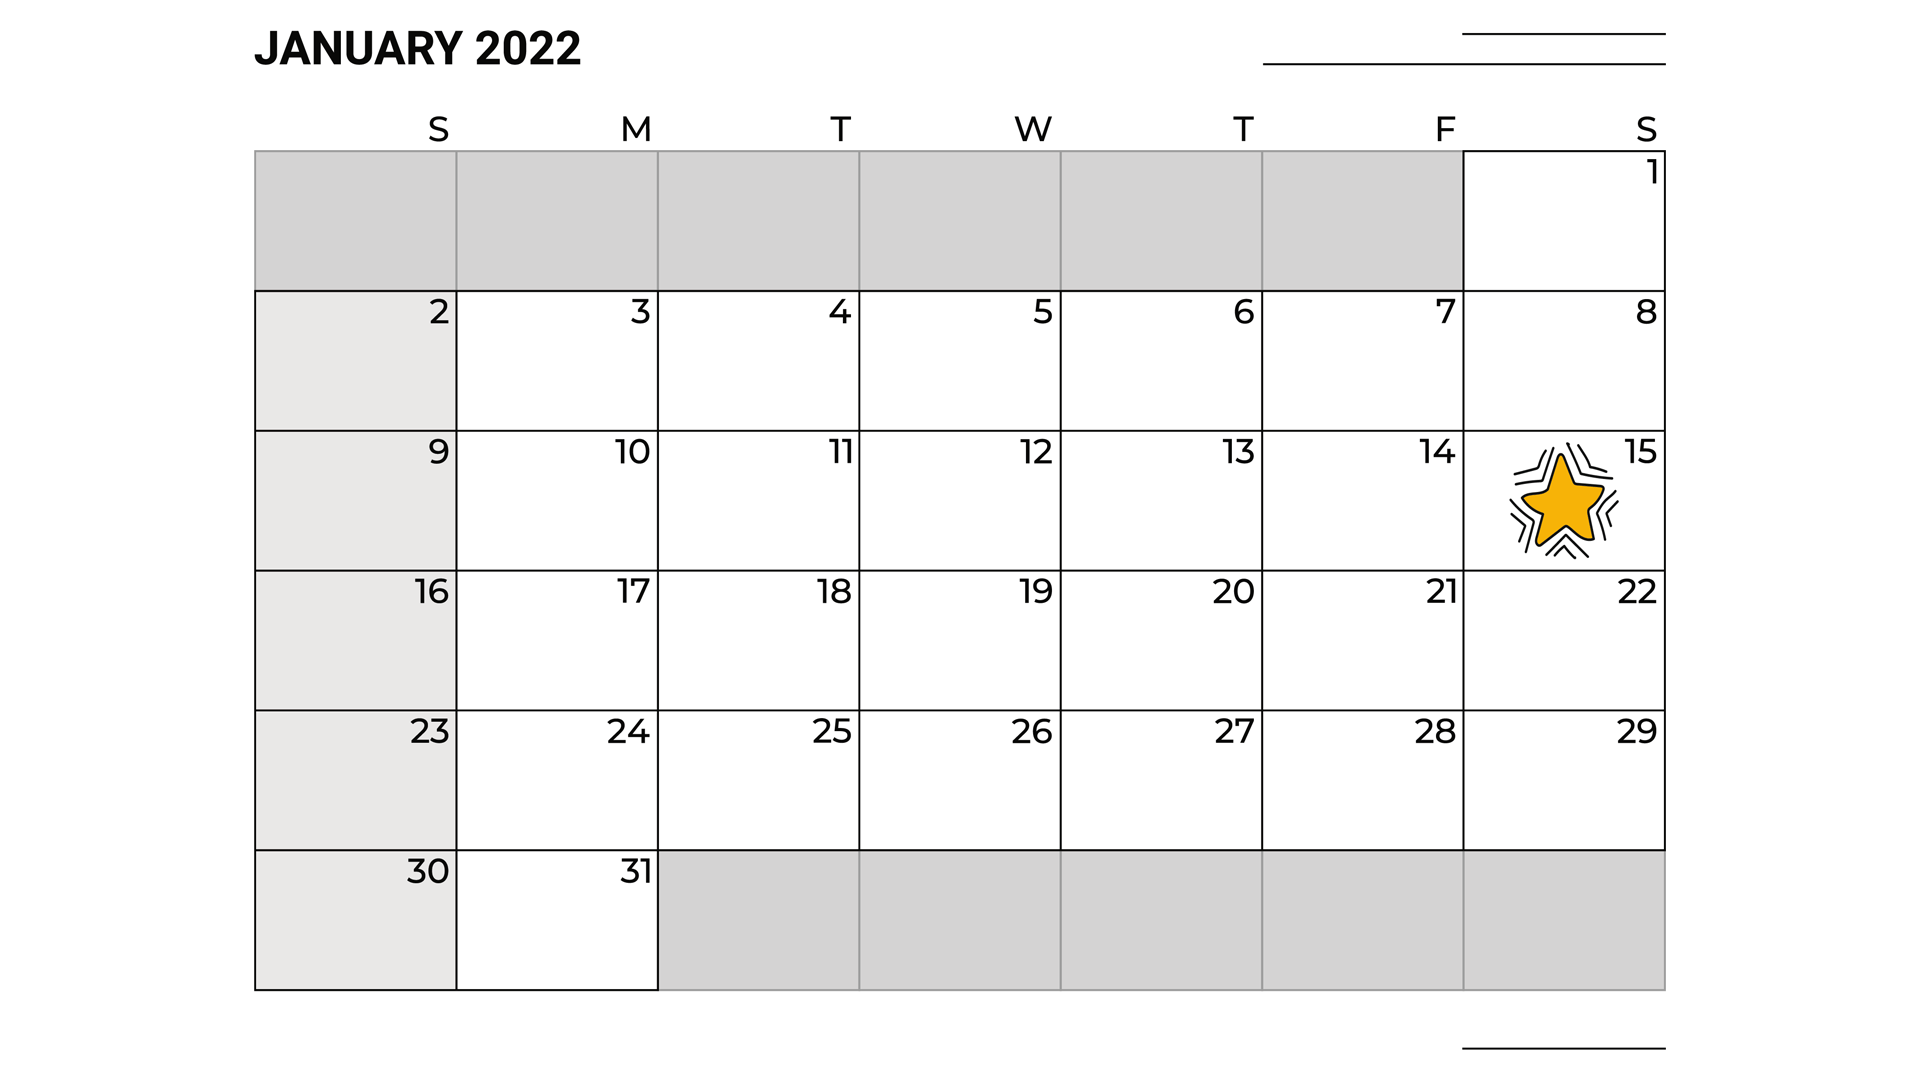 Chương trình giao lưu bắt đầu vào ngày 15 tháng 1 năm 2022